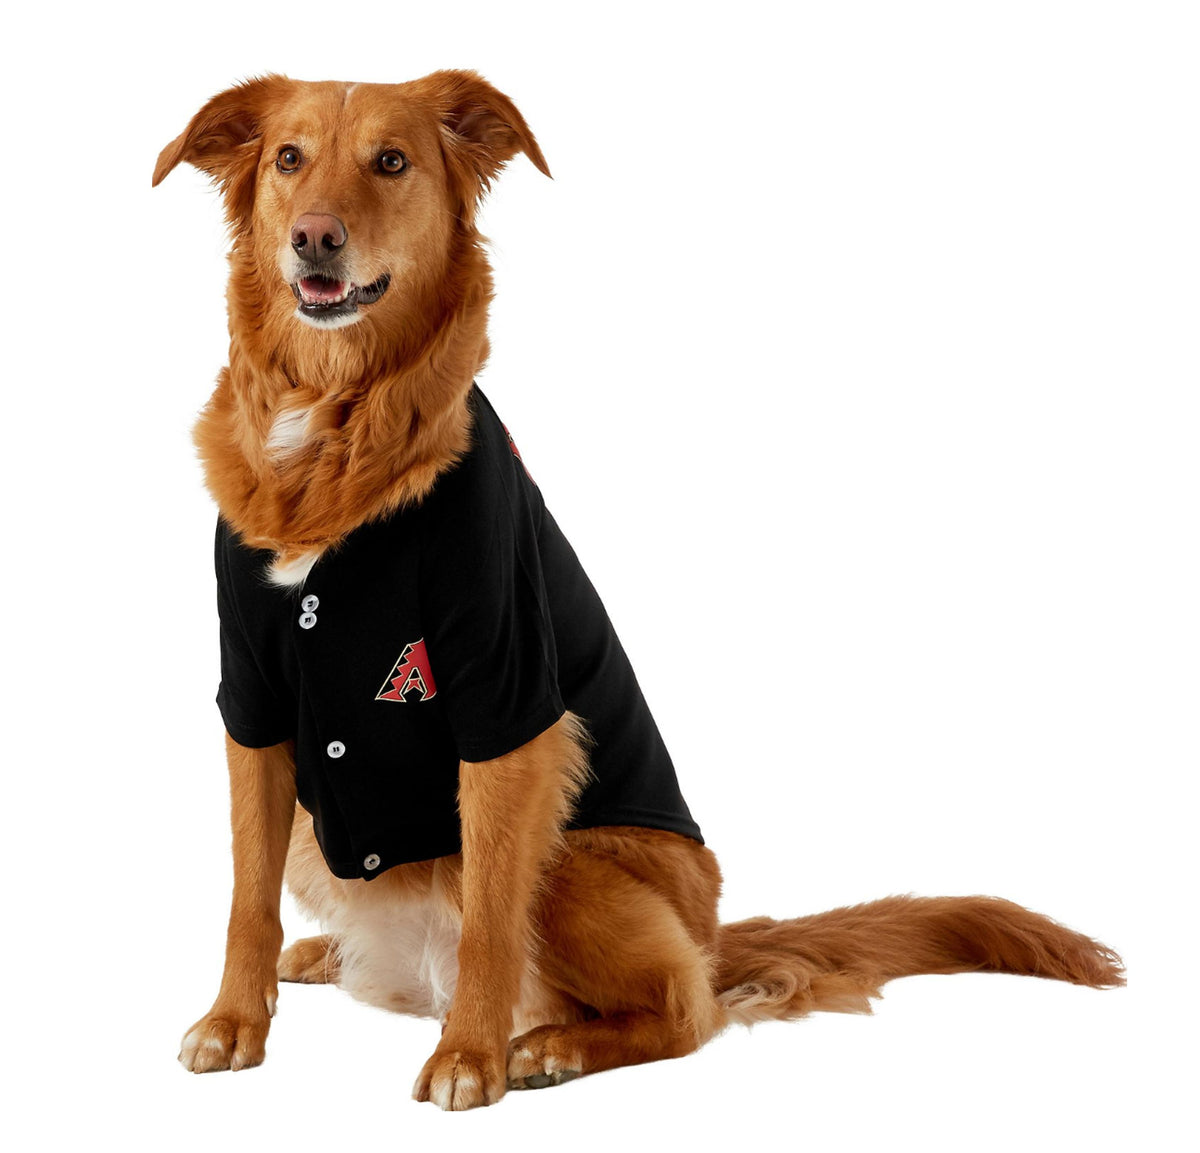 Pets First NCAA Louisville Cardinals Dog Cheerleader Outfit, Medium